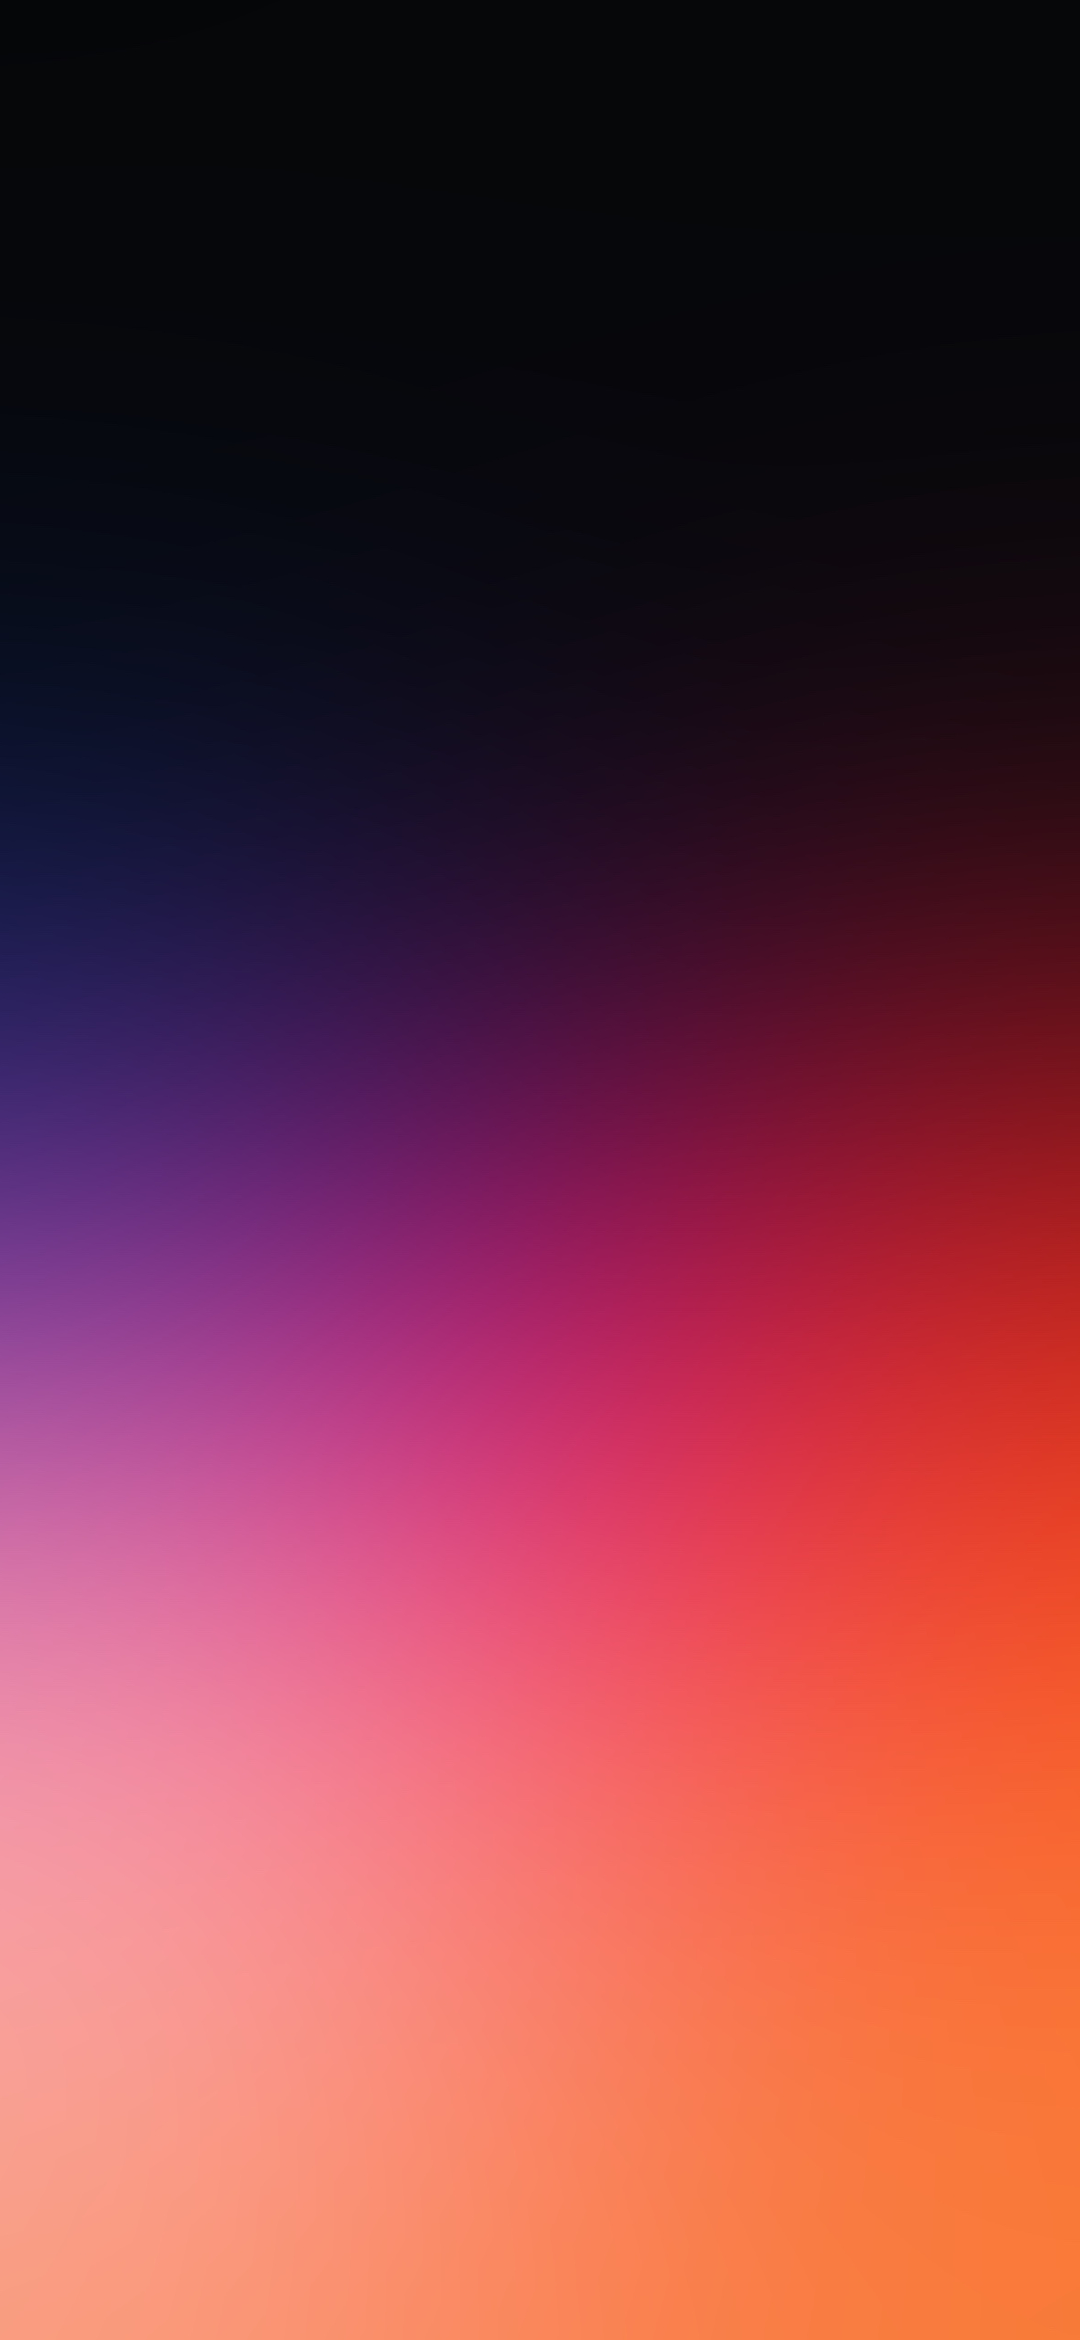 綺麗な紫とオレンジの淡いグラデーション Google Pixel 5 Android スマホ壁紙 待ち受け スマラン